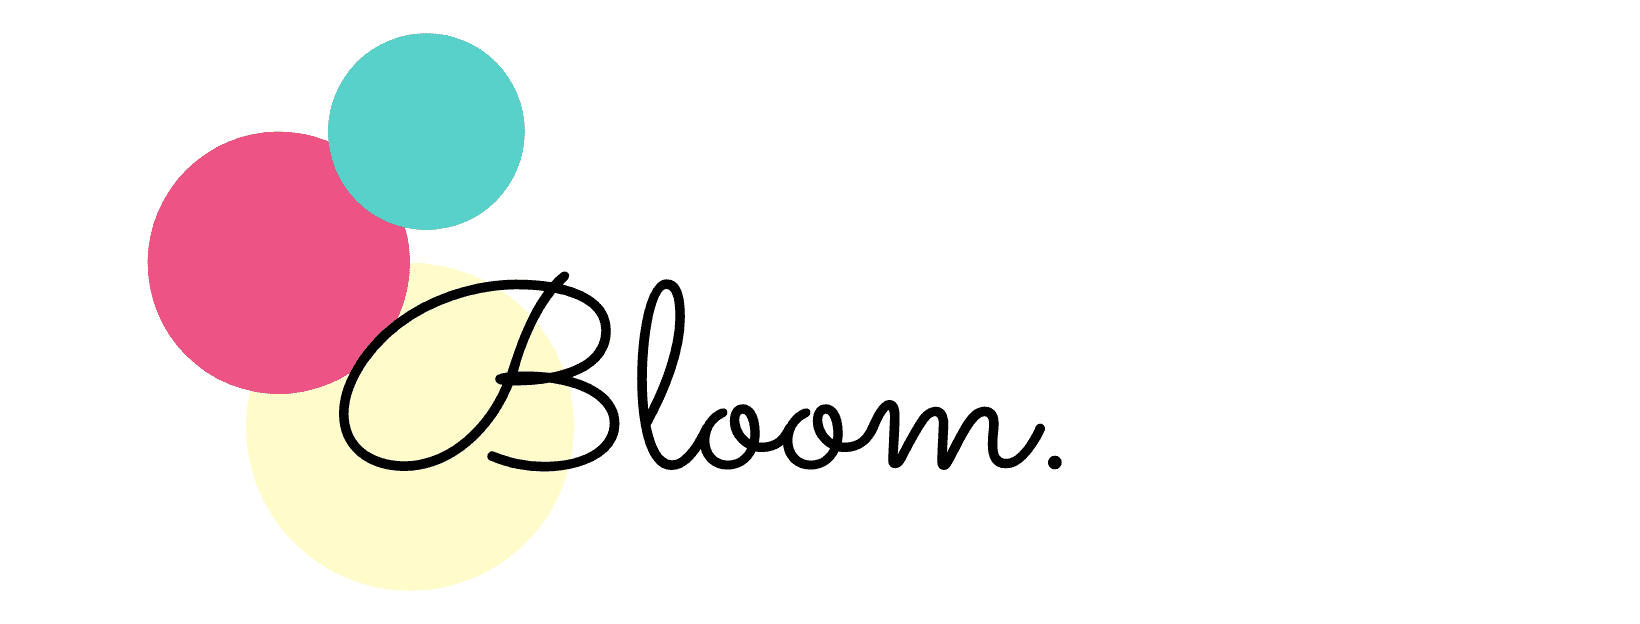 マッチングアプリや婚活サイトの総合メディア「Bloom.」の記事を監修しました！